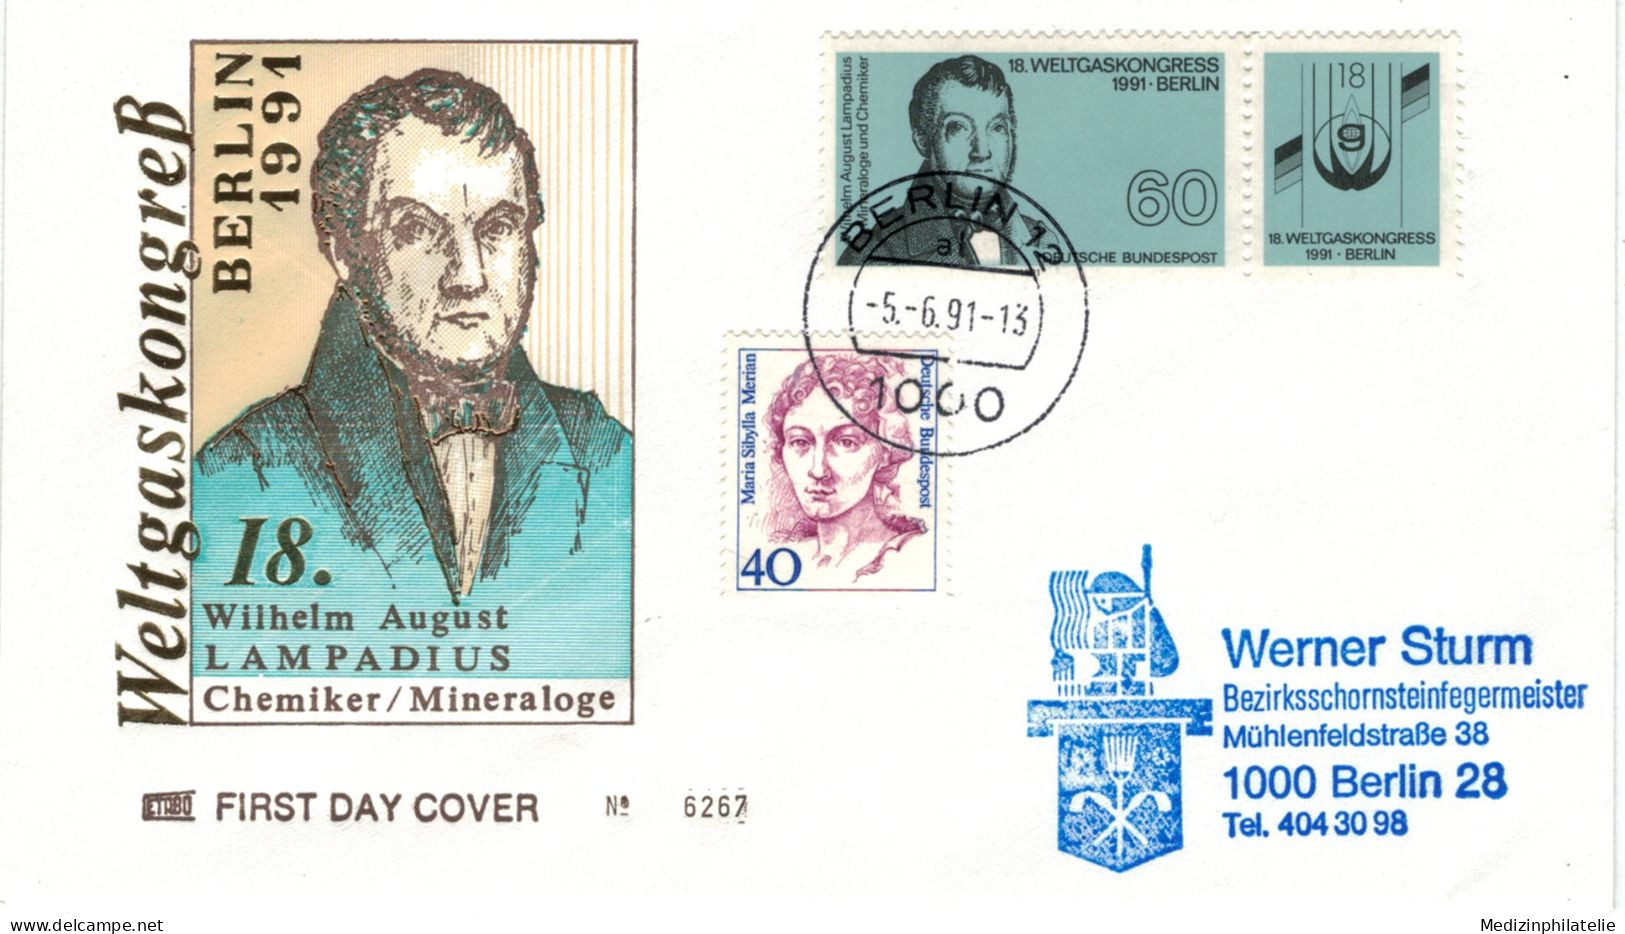 Wilhelm August Eberhard Lampadius War Ein Deutscher Hüttentechniker, Chemiker Und Agronom - 1 Berlin 1991 Zusammendruck - Chimie